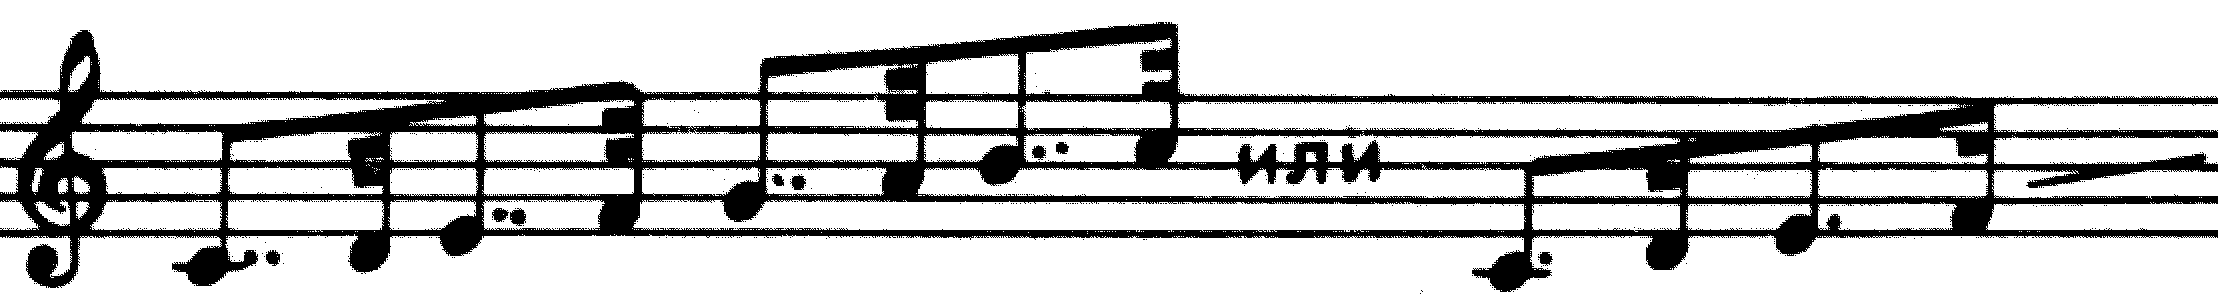 Взаимосвязь музыкально-слухового и технического развития в процессе обучения игре на фортепиано